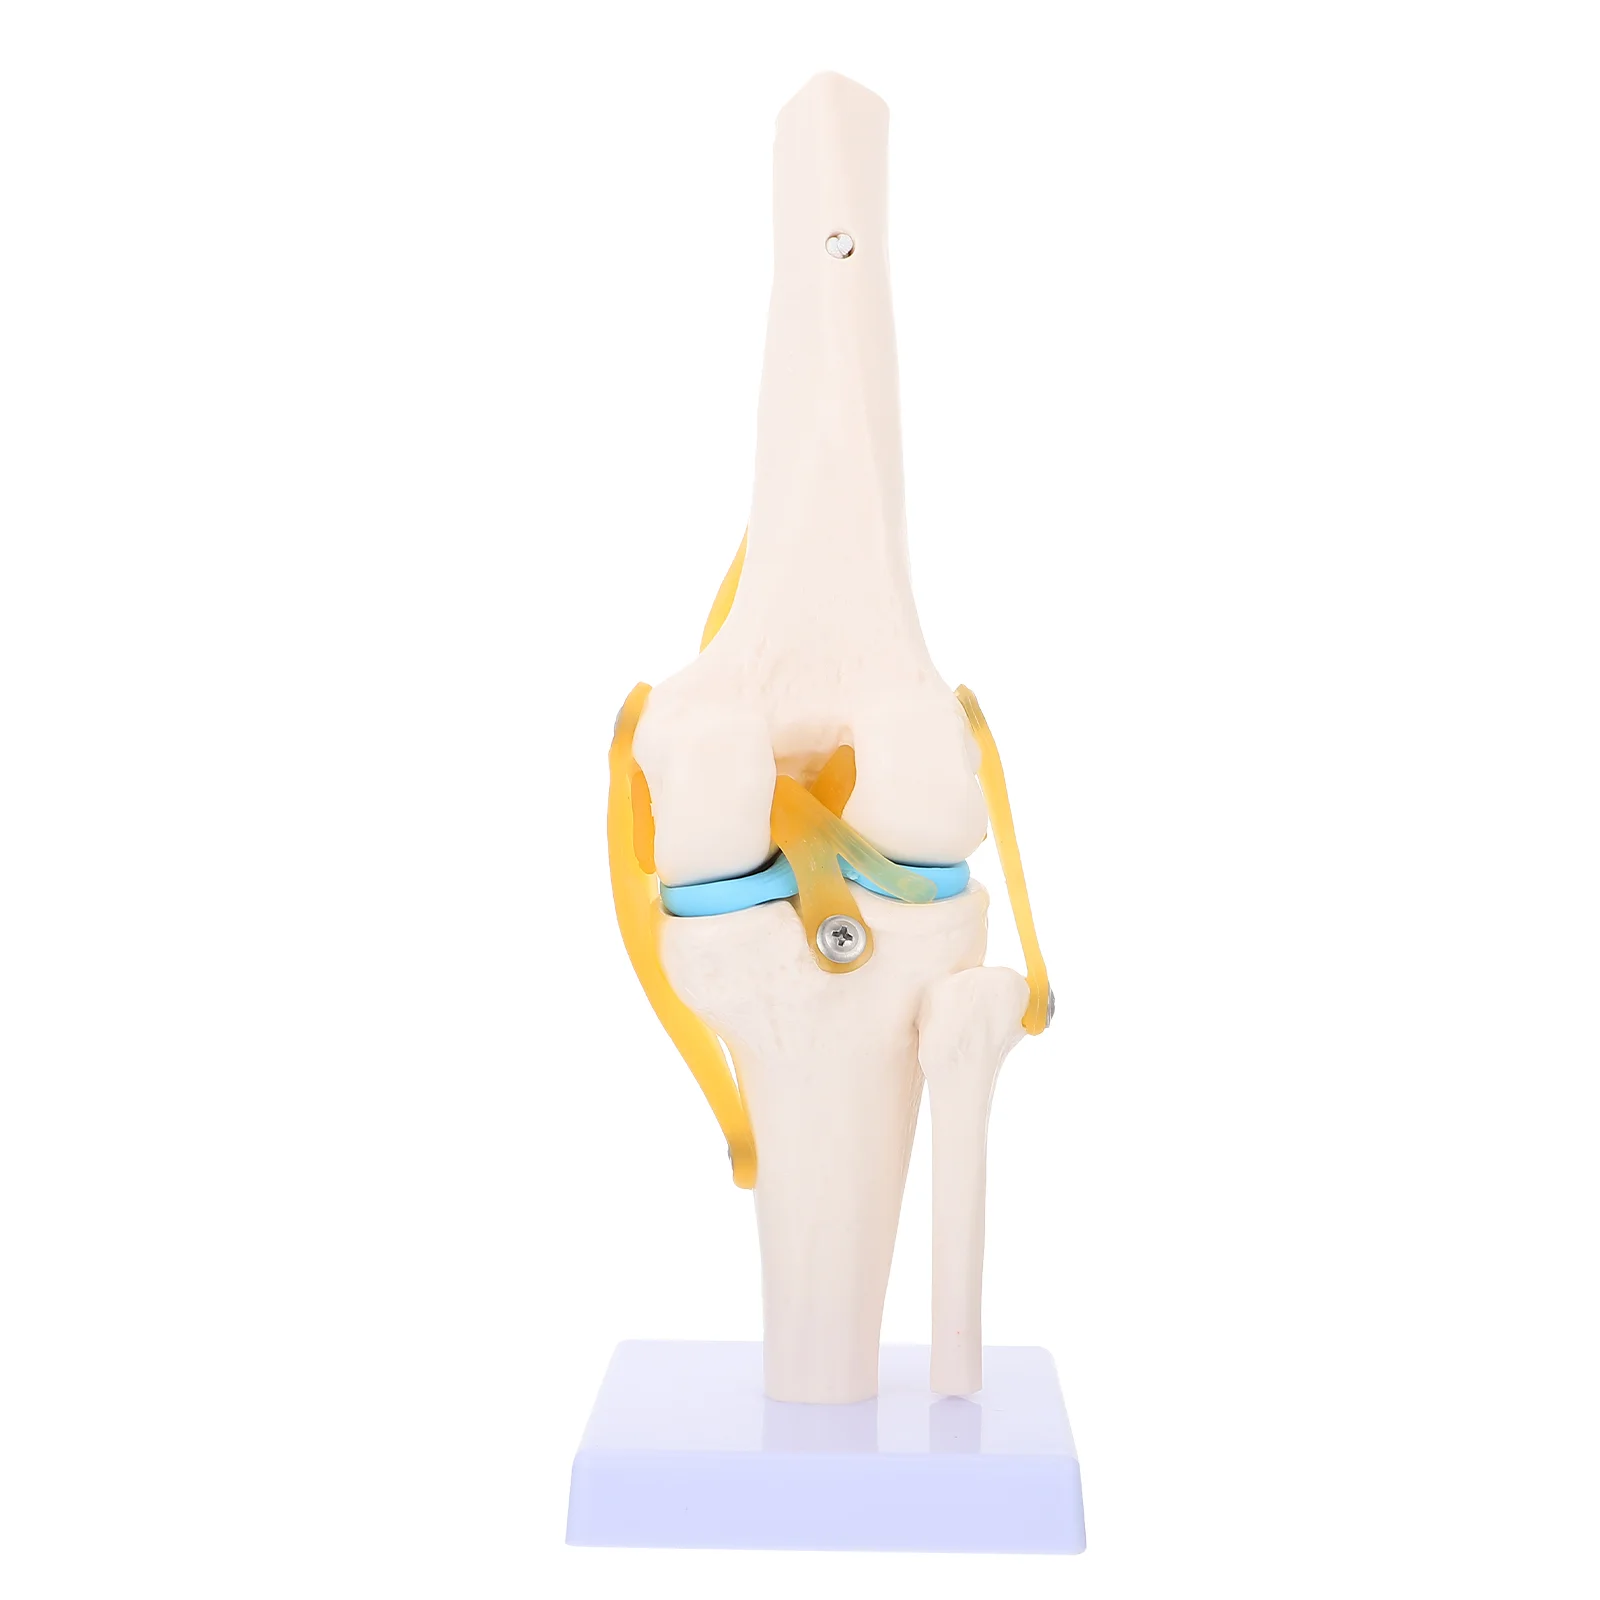 

Модель человеческого коленного сустава анатомическая модель 1:1 натуральный размер для медицинских учебных пособий анатомия